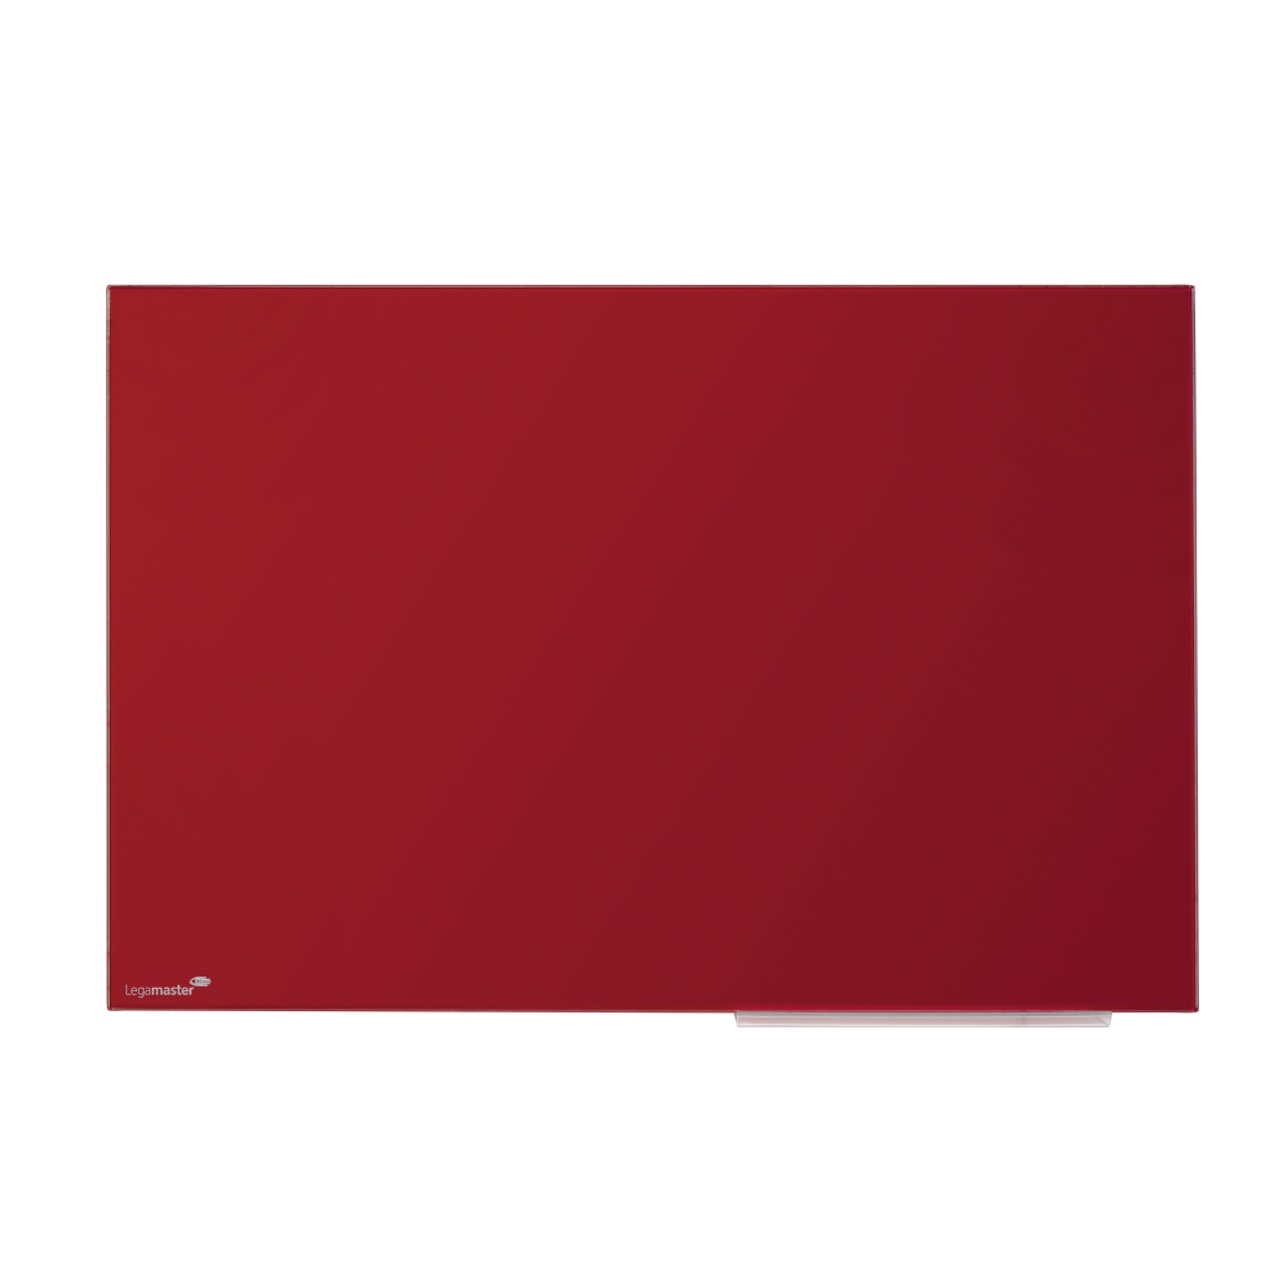 Glass Board 60 x 80 cm röd